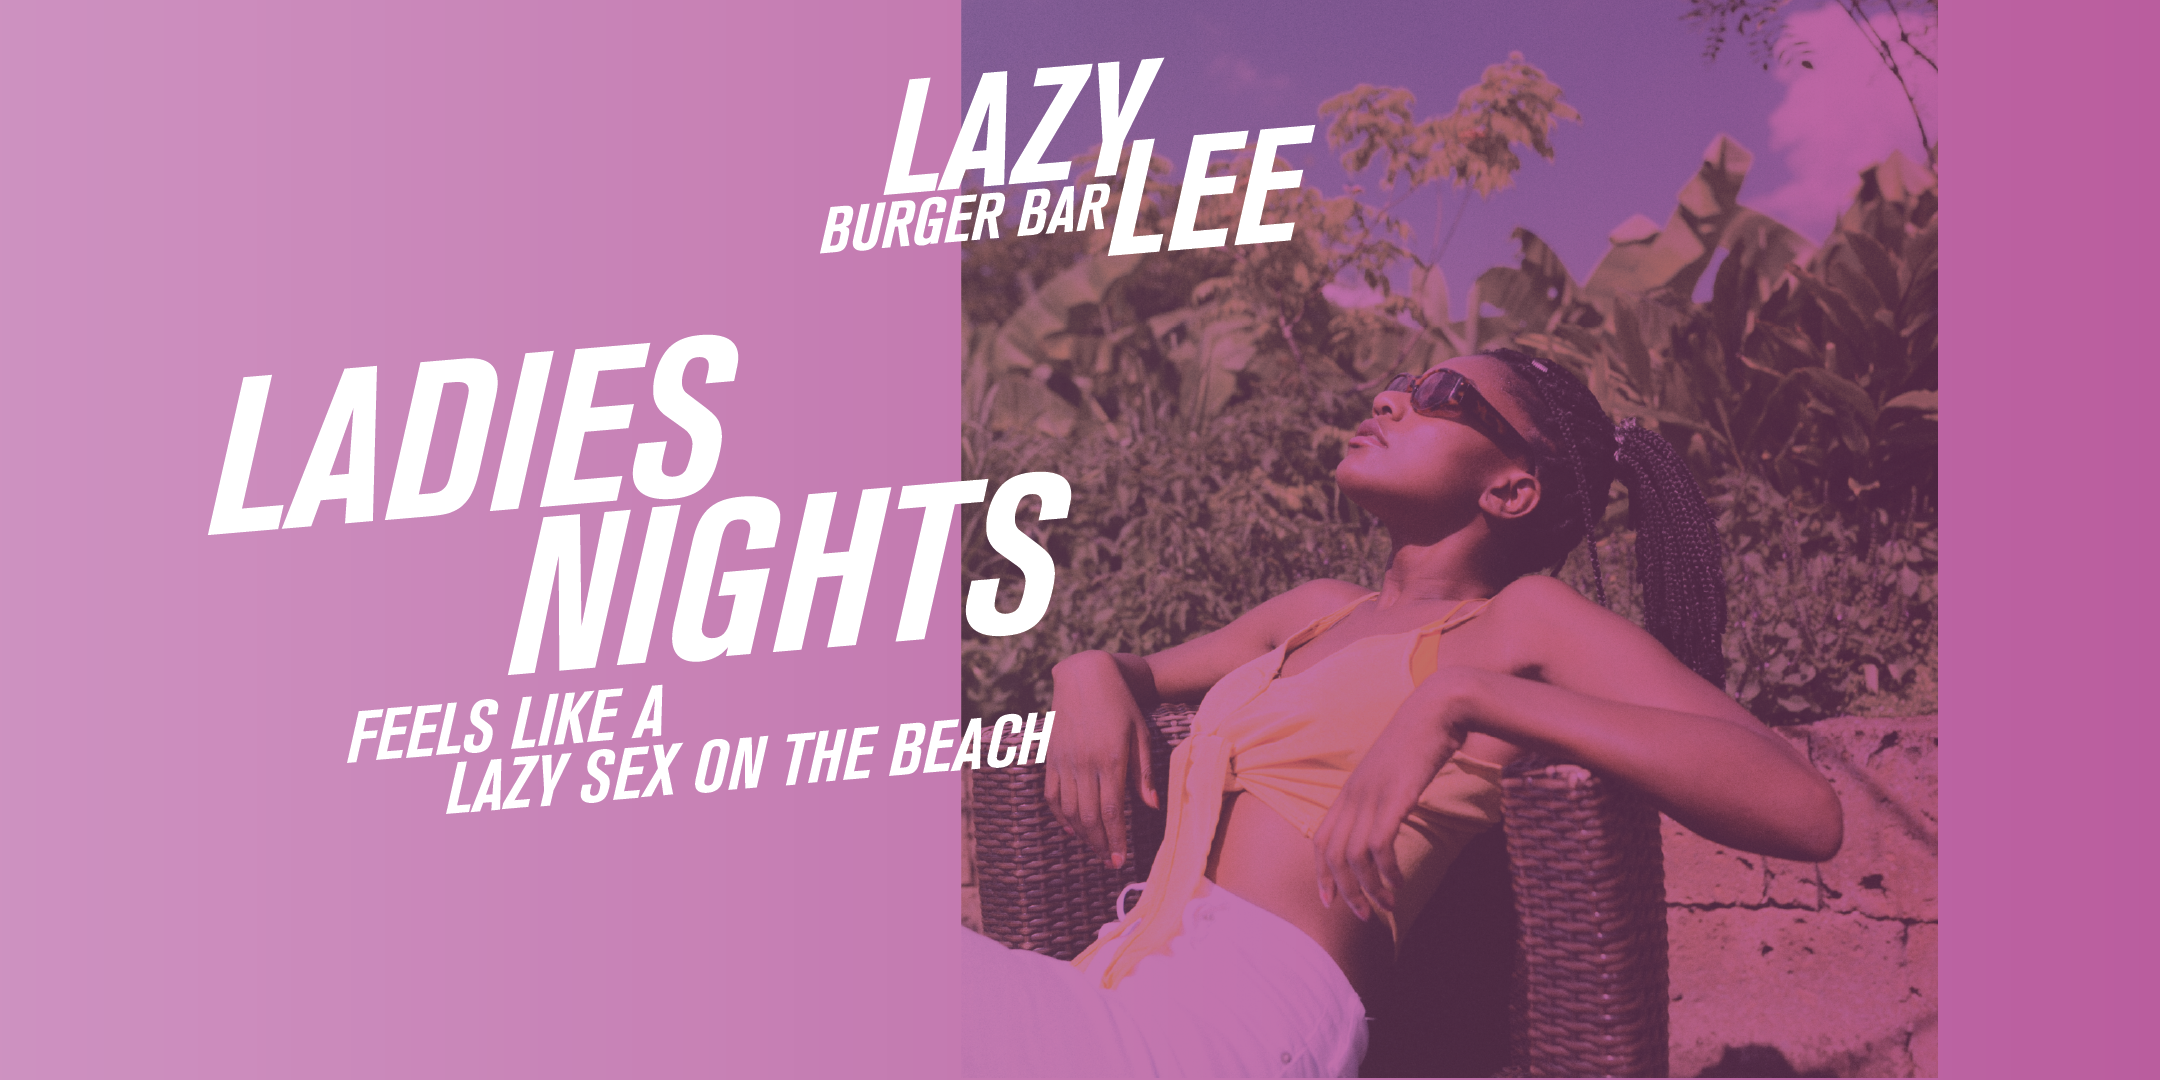 Ladies Night at Lazy Lee